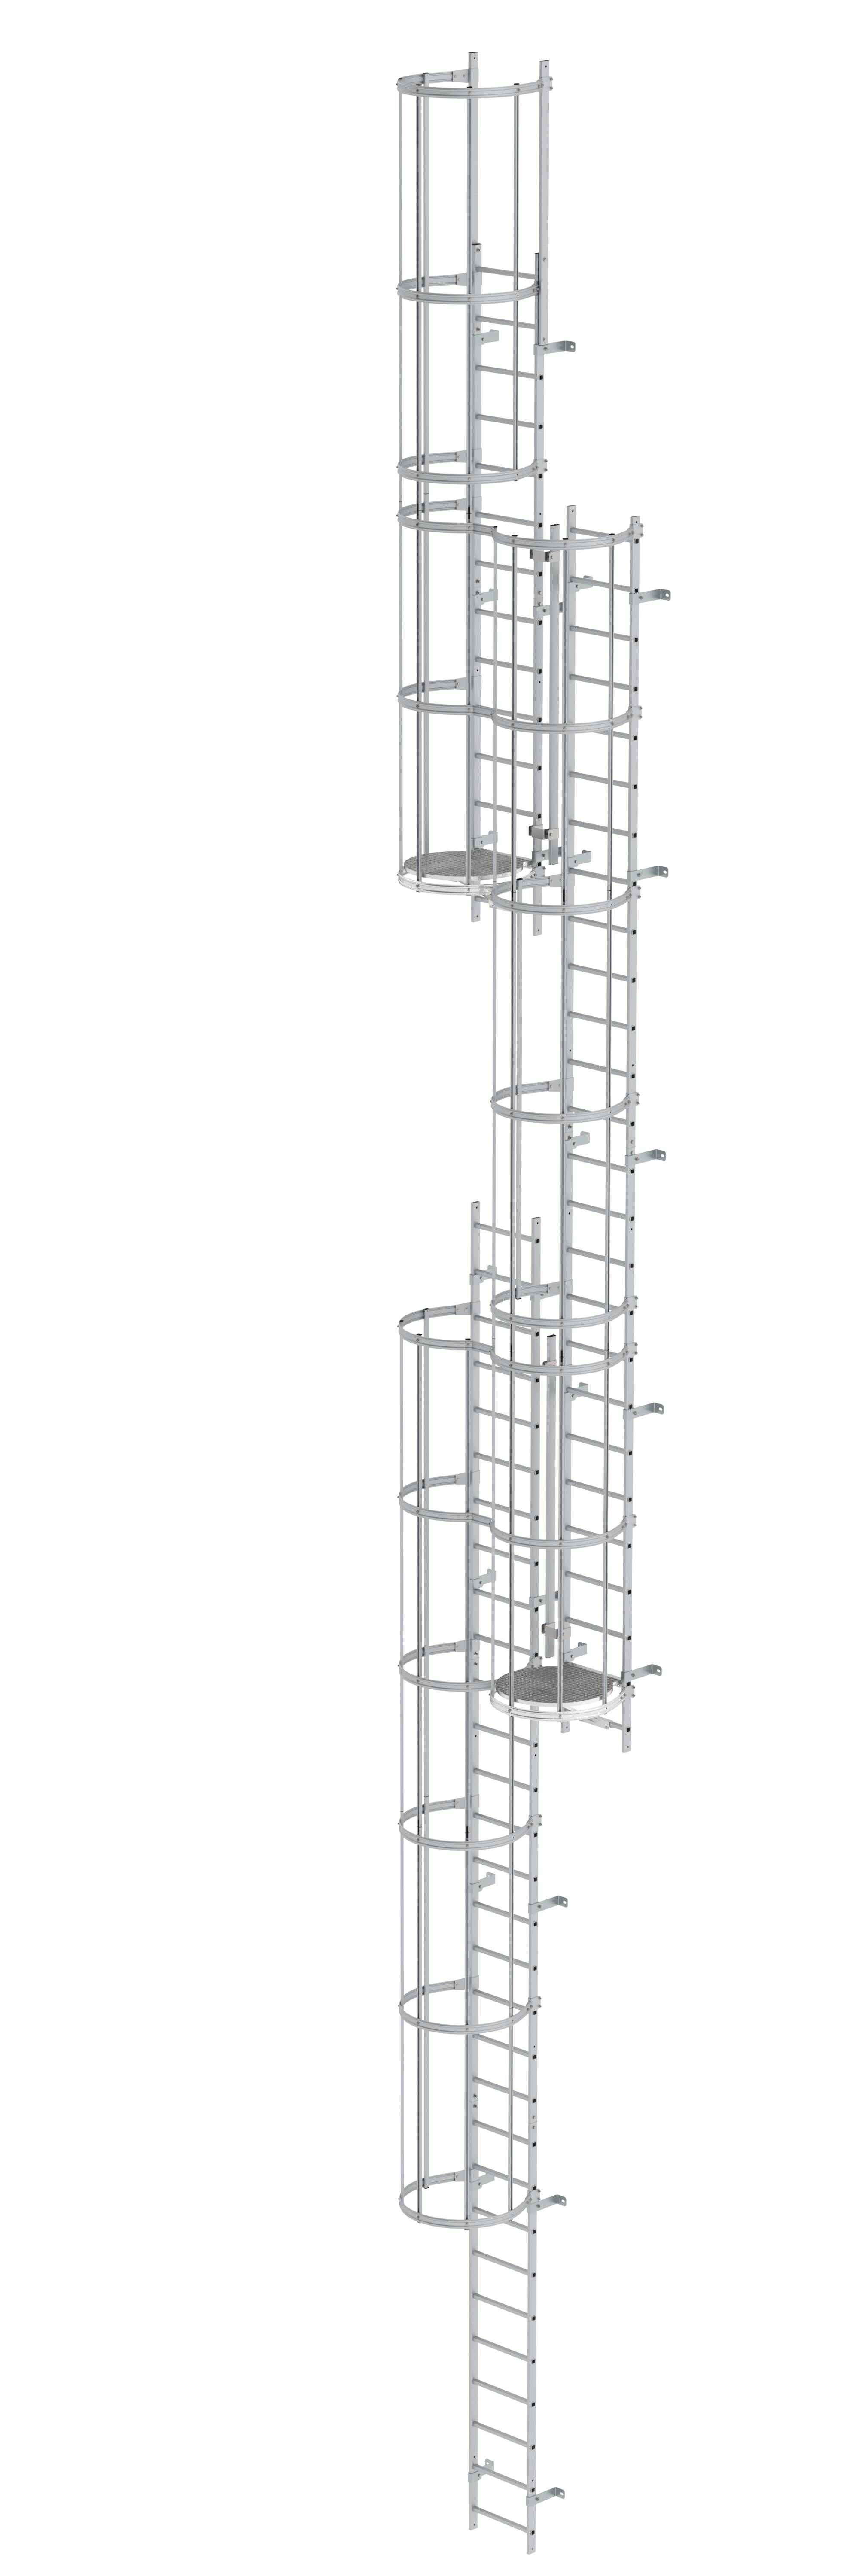 Mehrzügige Steigleiter mit Rückenschutz (Maschinen) Aluminium blank 15,20m